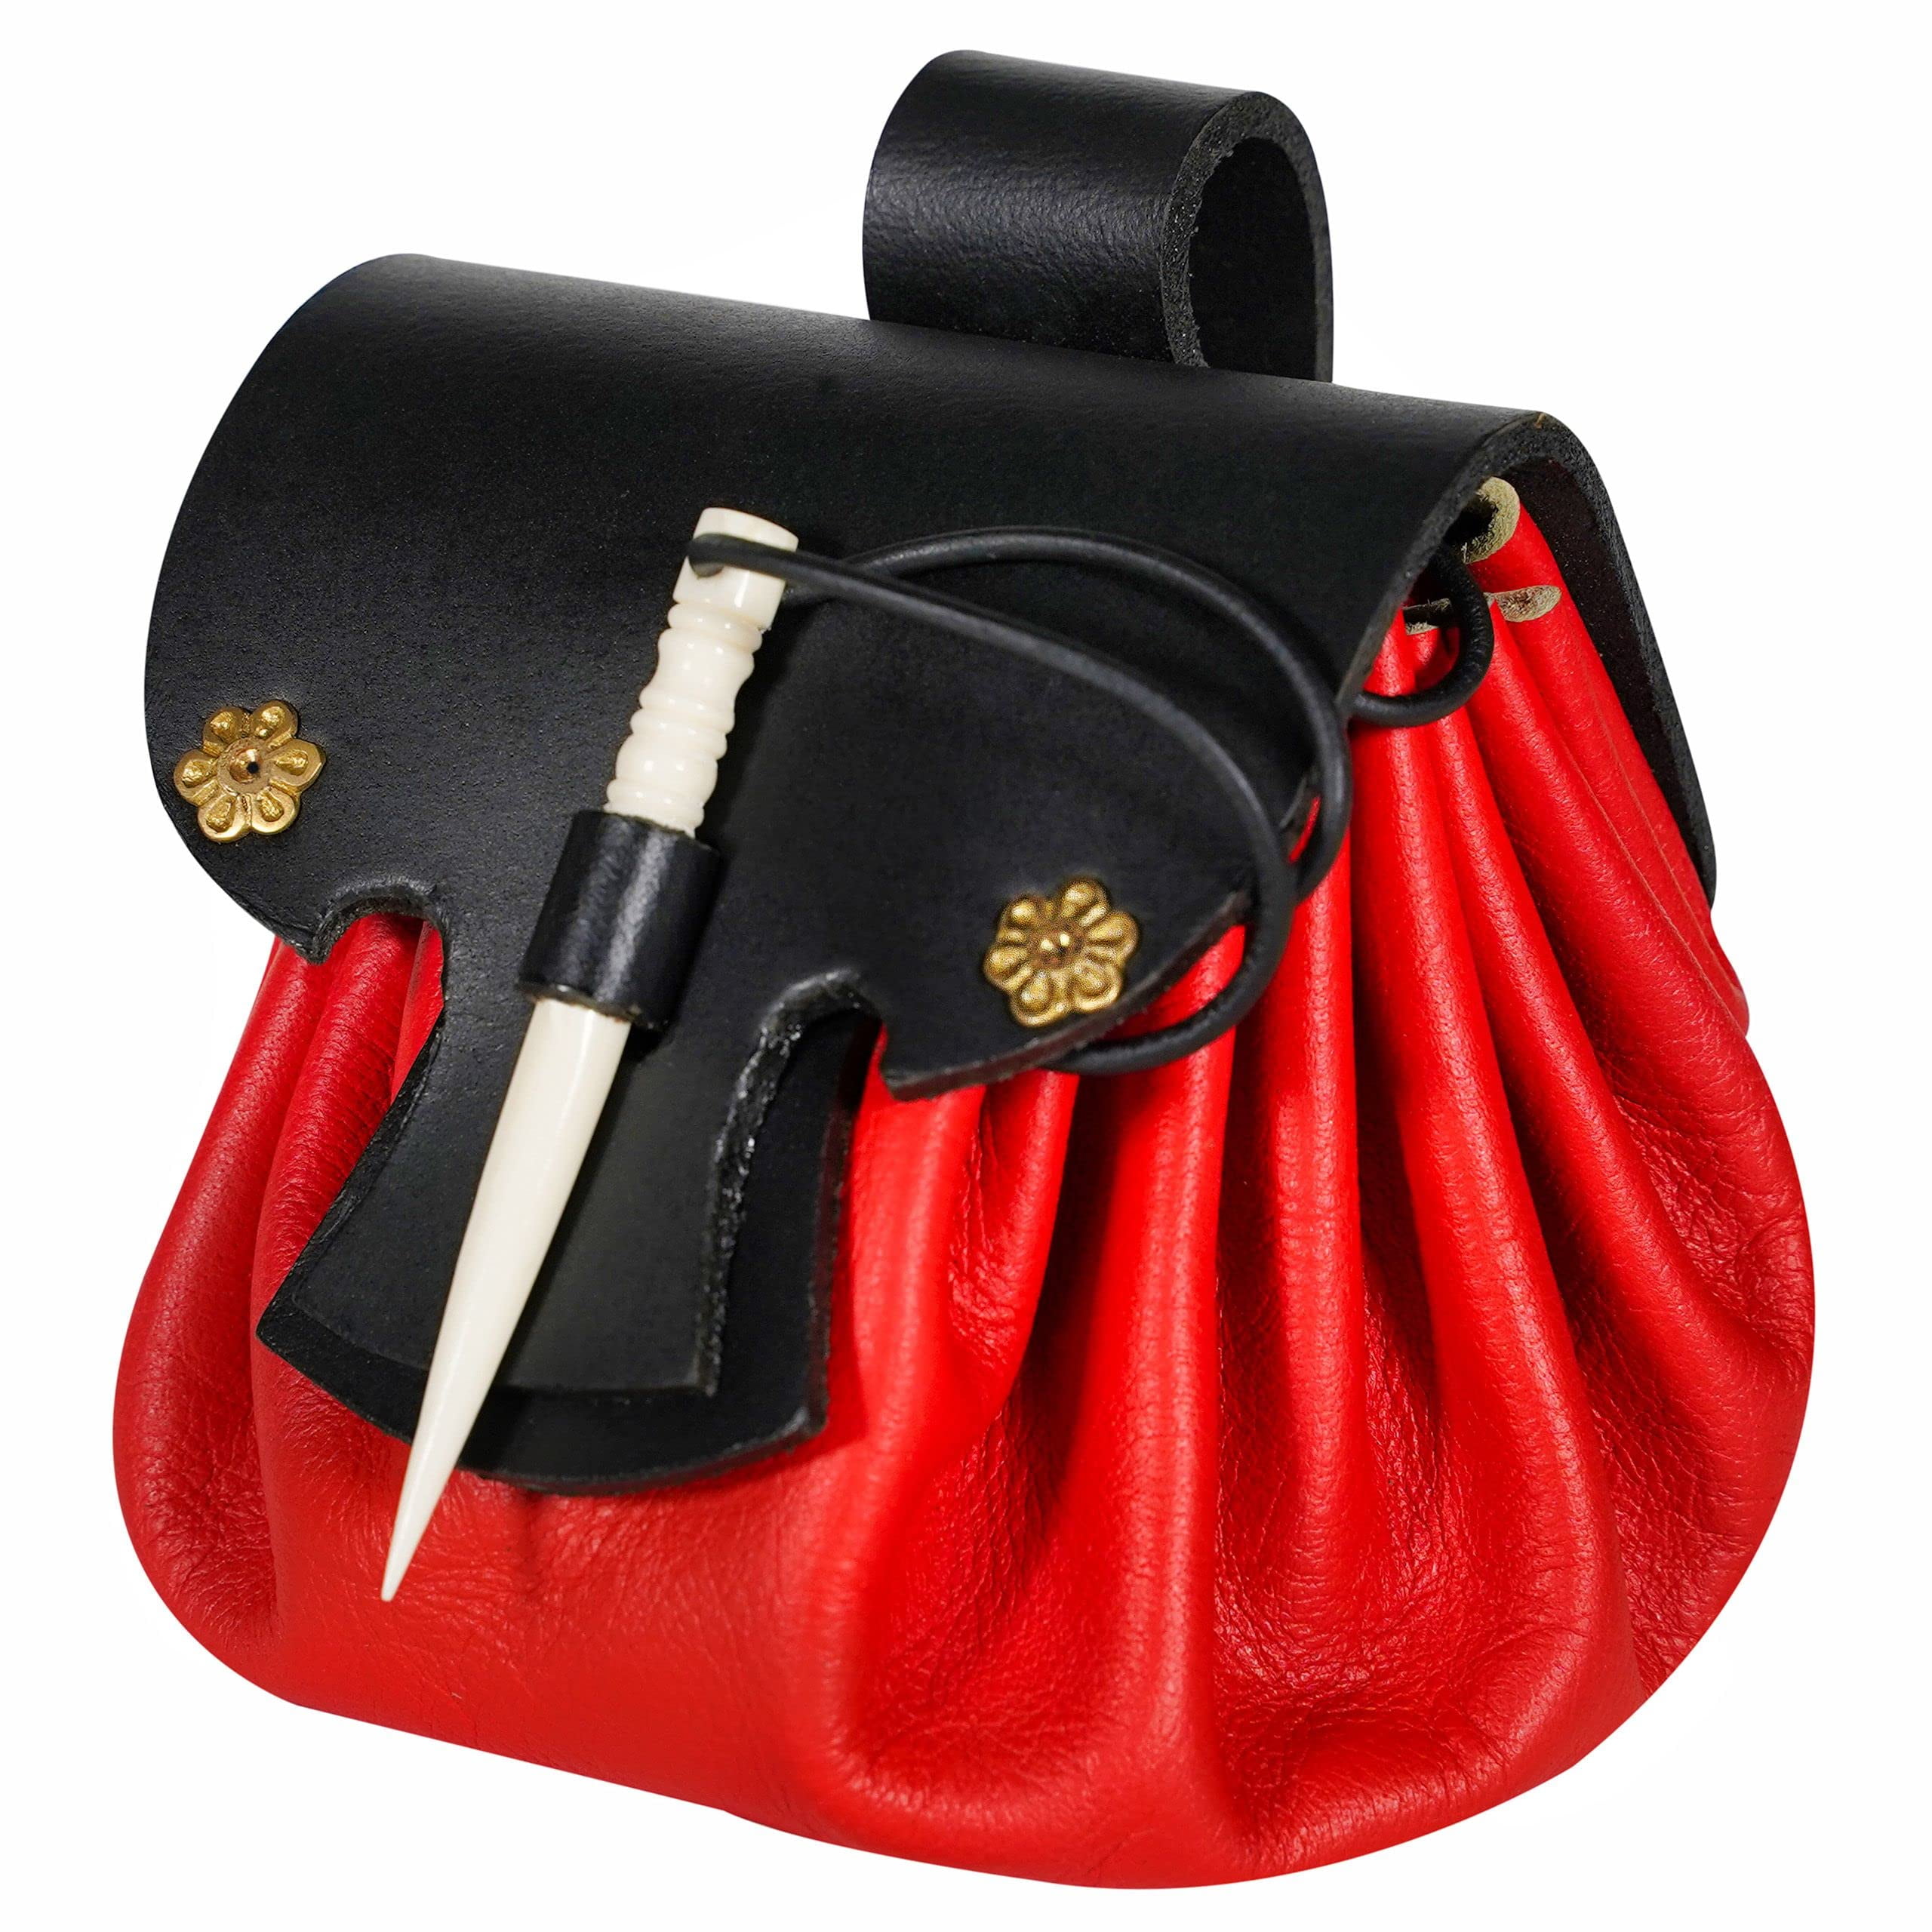 Bushcraft Sporran (Belt Bag) by Sleeping Fox Leather